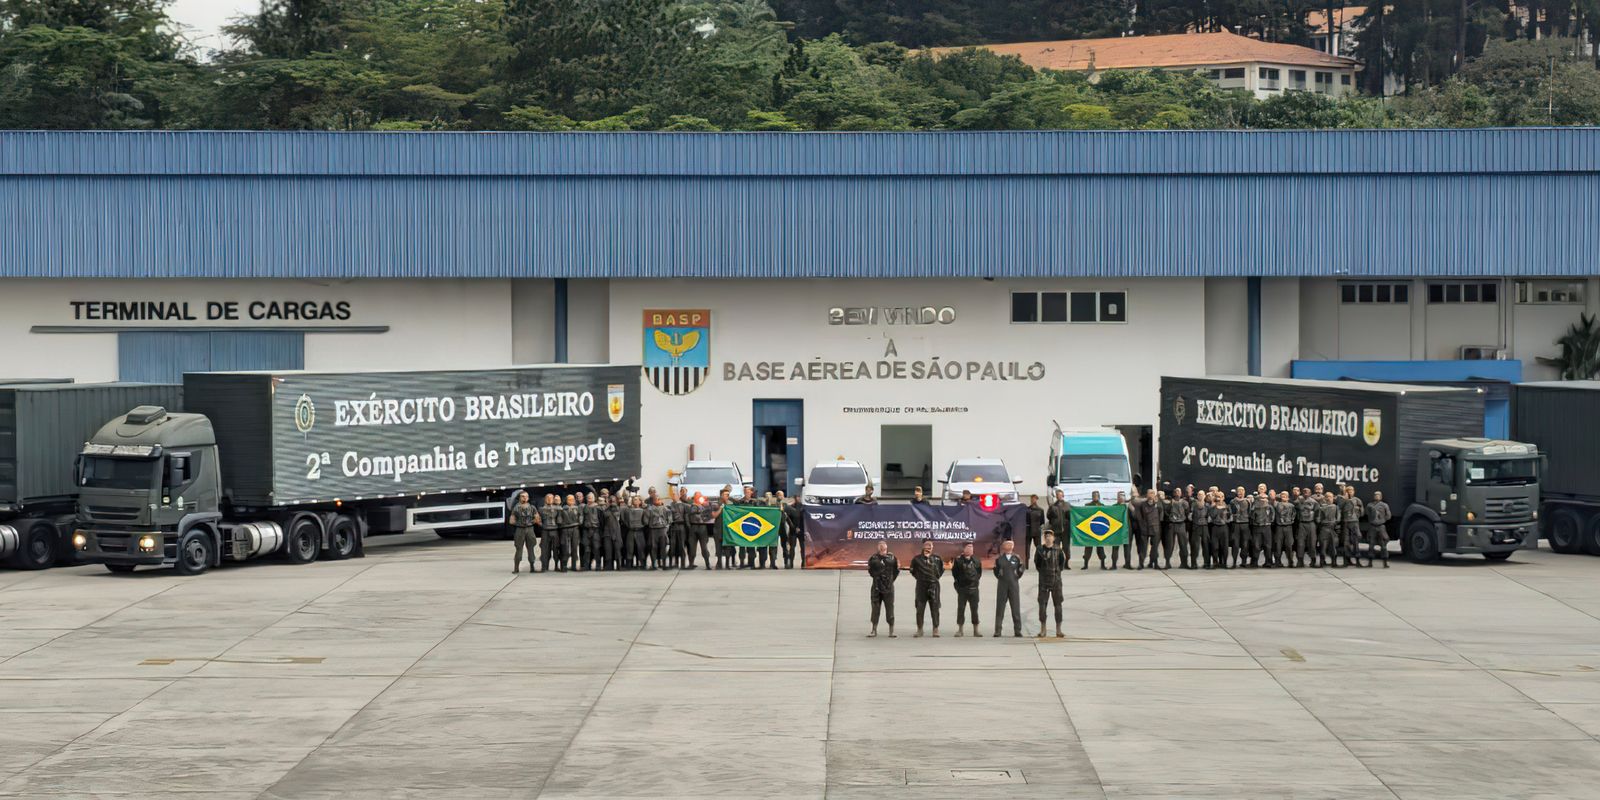 Corrente do bem lota nove caminhões em São Paulo para doação ao Rio Grande do Sul